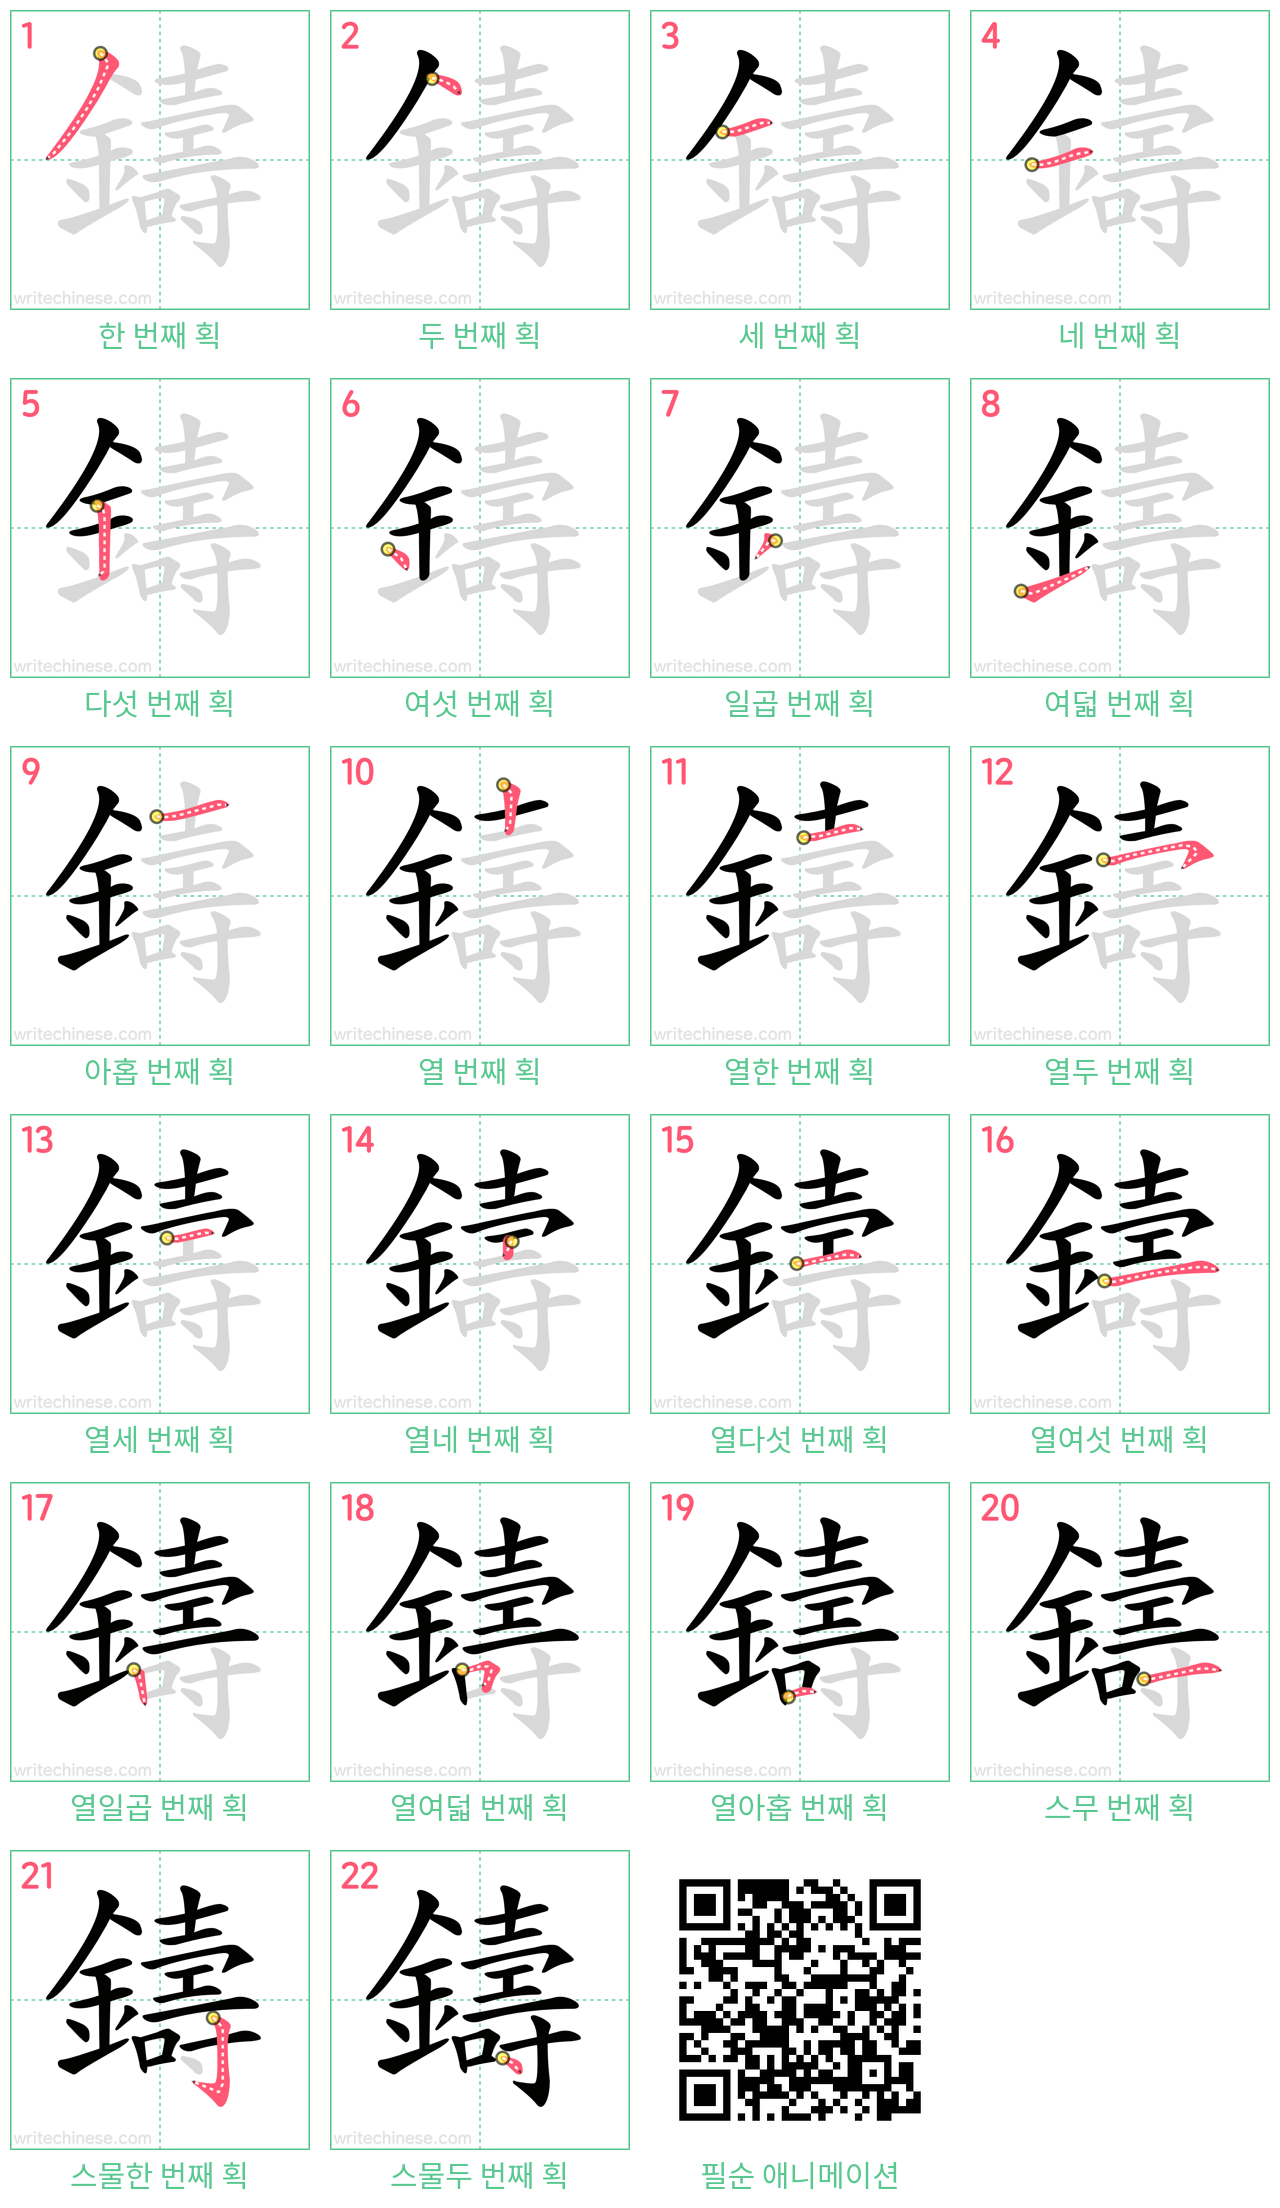 鑄 step-by-step stroke order diagrams